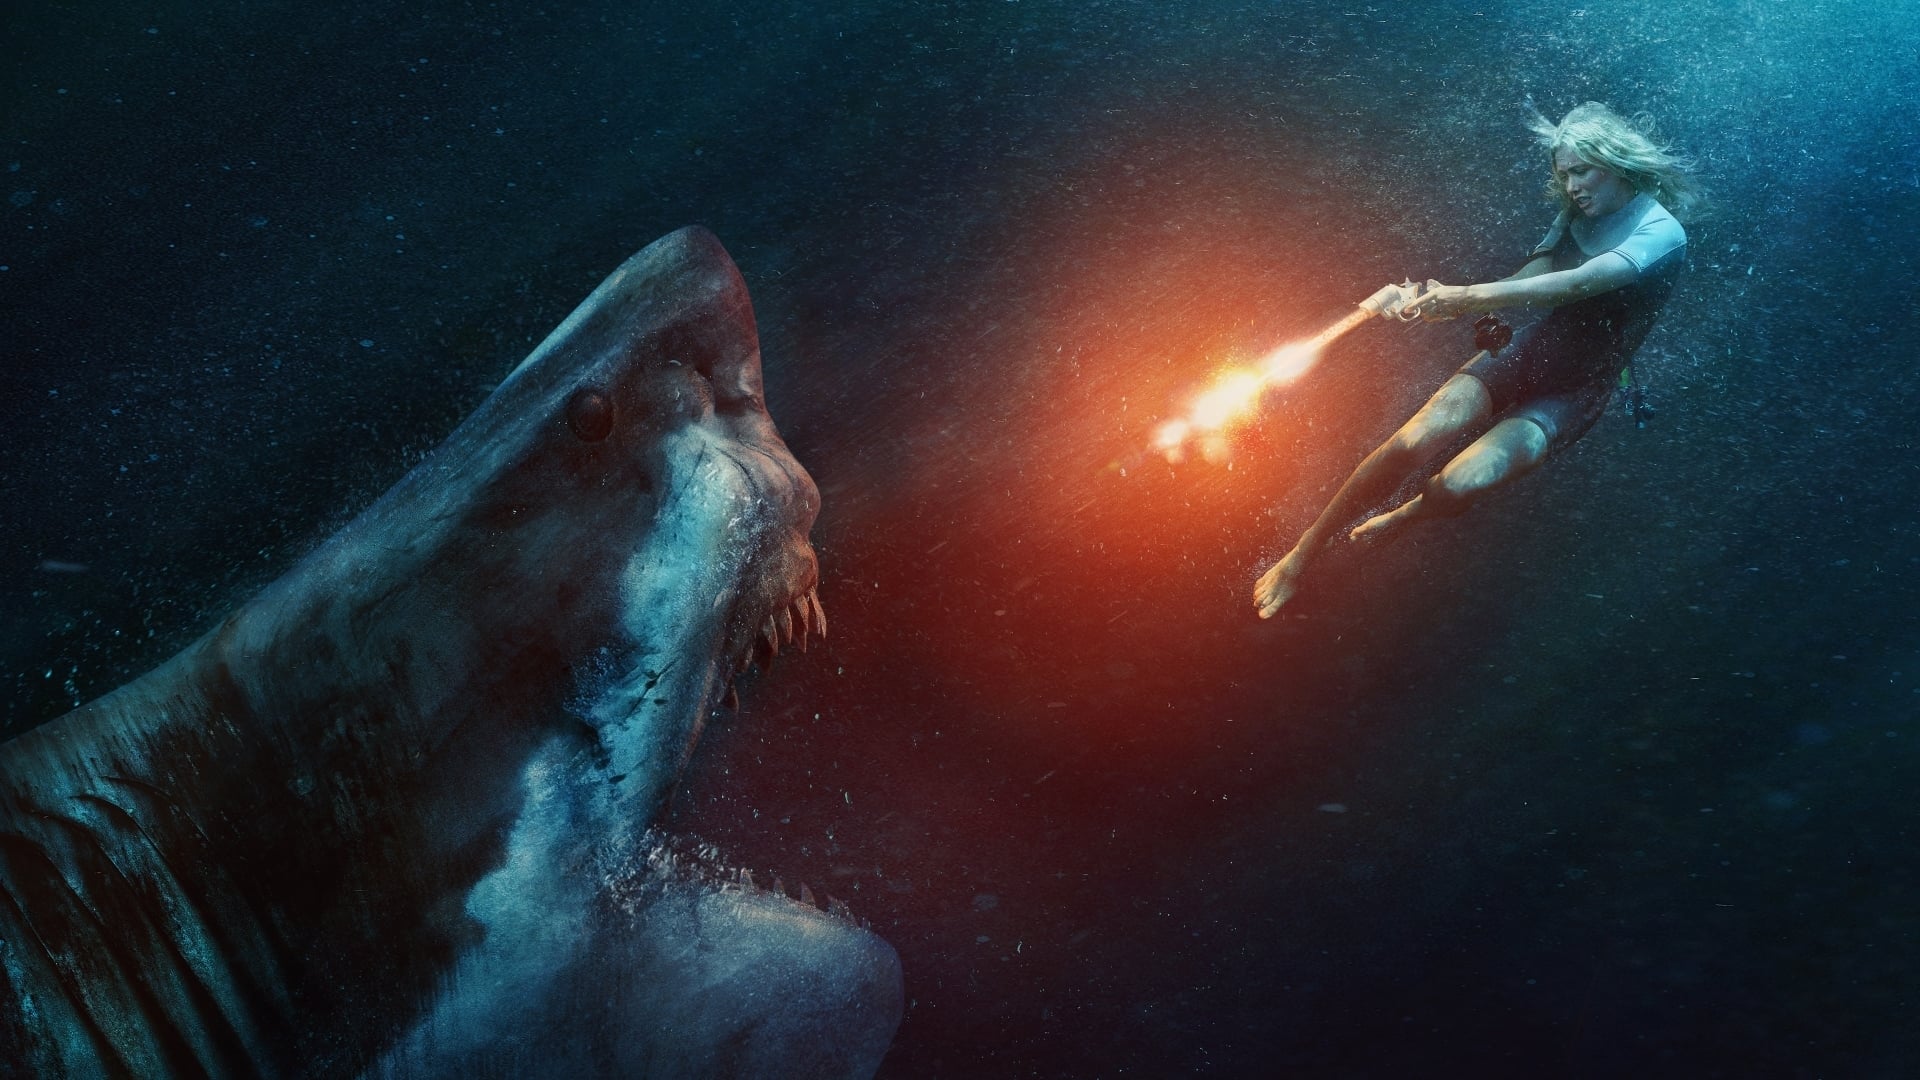 ฉลามขาว เพชฌฆาต Great White ออนไลน์โดยสมบูรณ์ในปี 2021